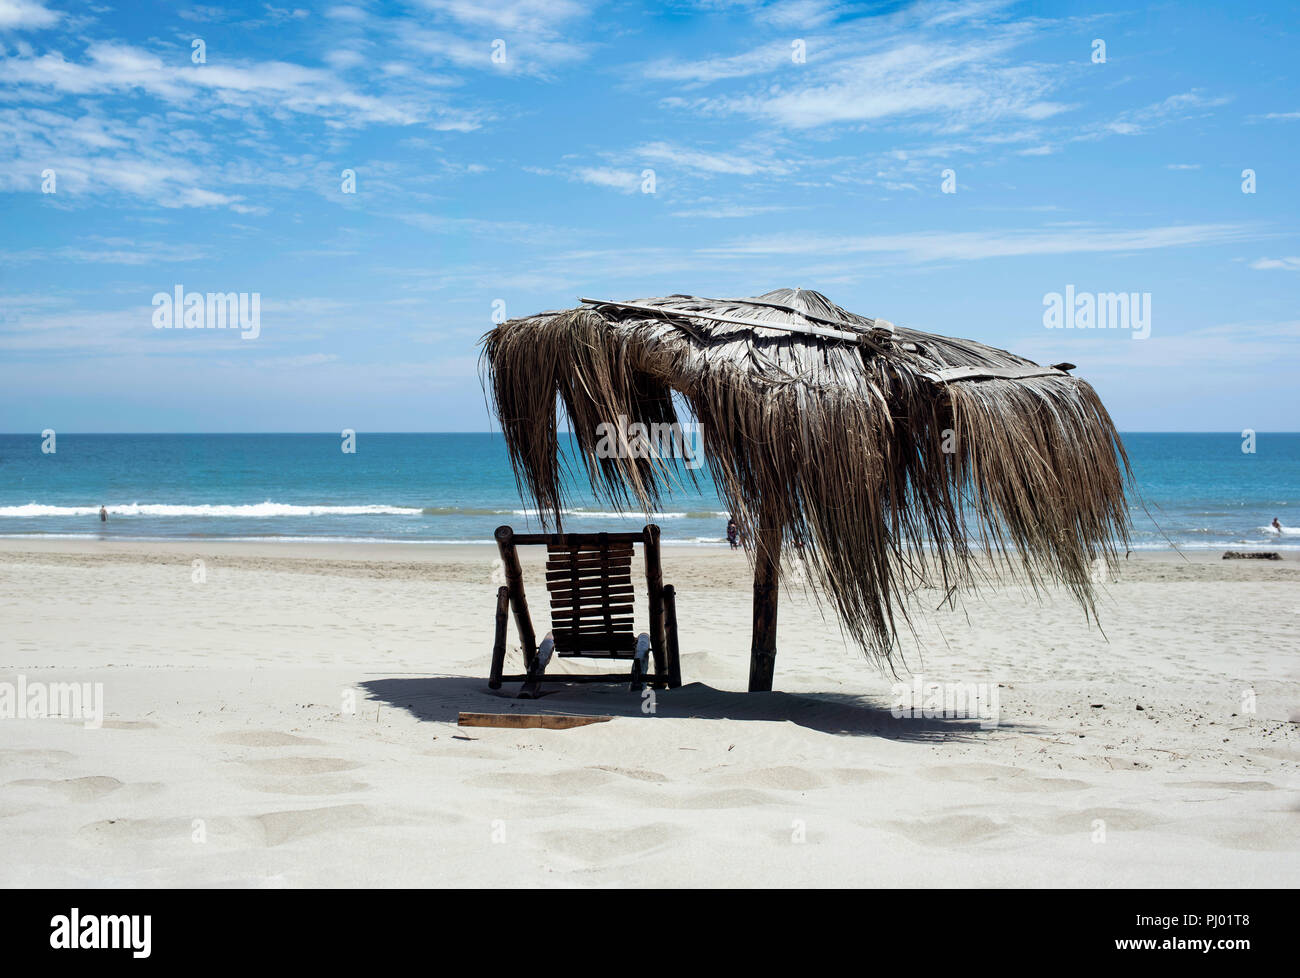 Rustikal Strandkorb und Stroh Regenschirm mit türkisblauem Meer. Entspannte Stimmung auf Vichayito Beach in der Nähe von Mancora, Region Piura, Peru. Aug 2018 Stockfoto